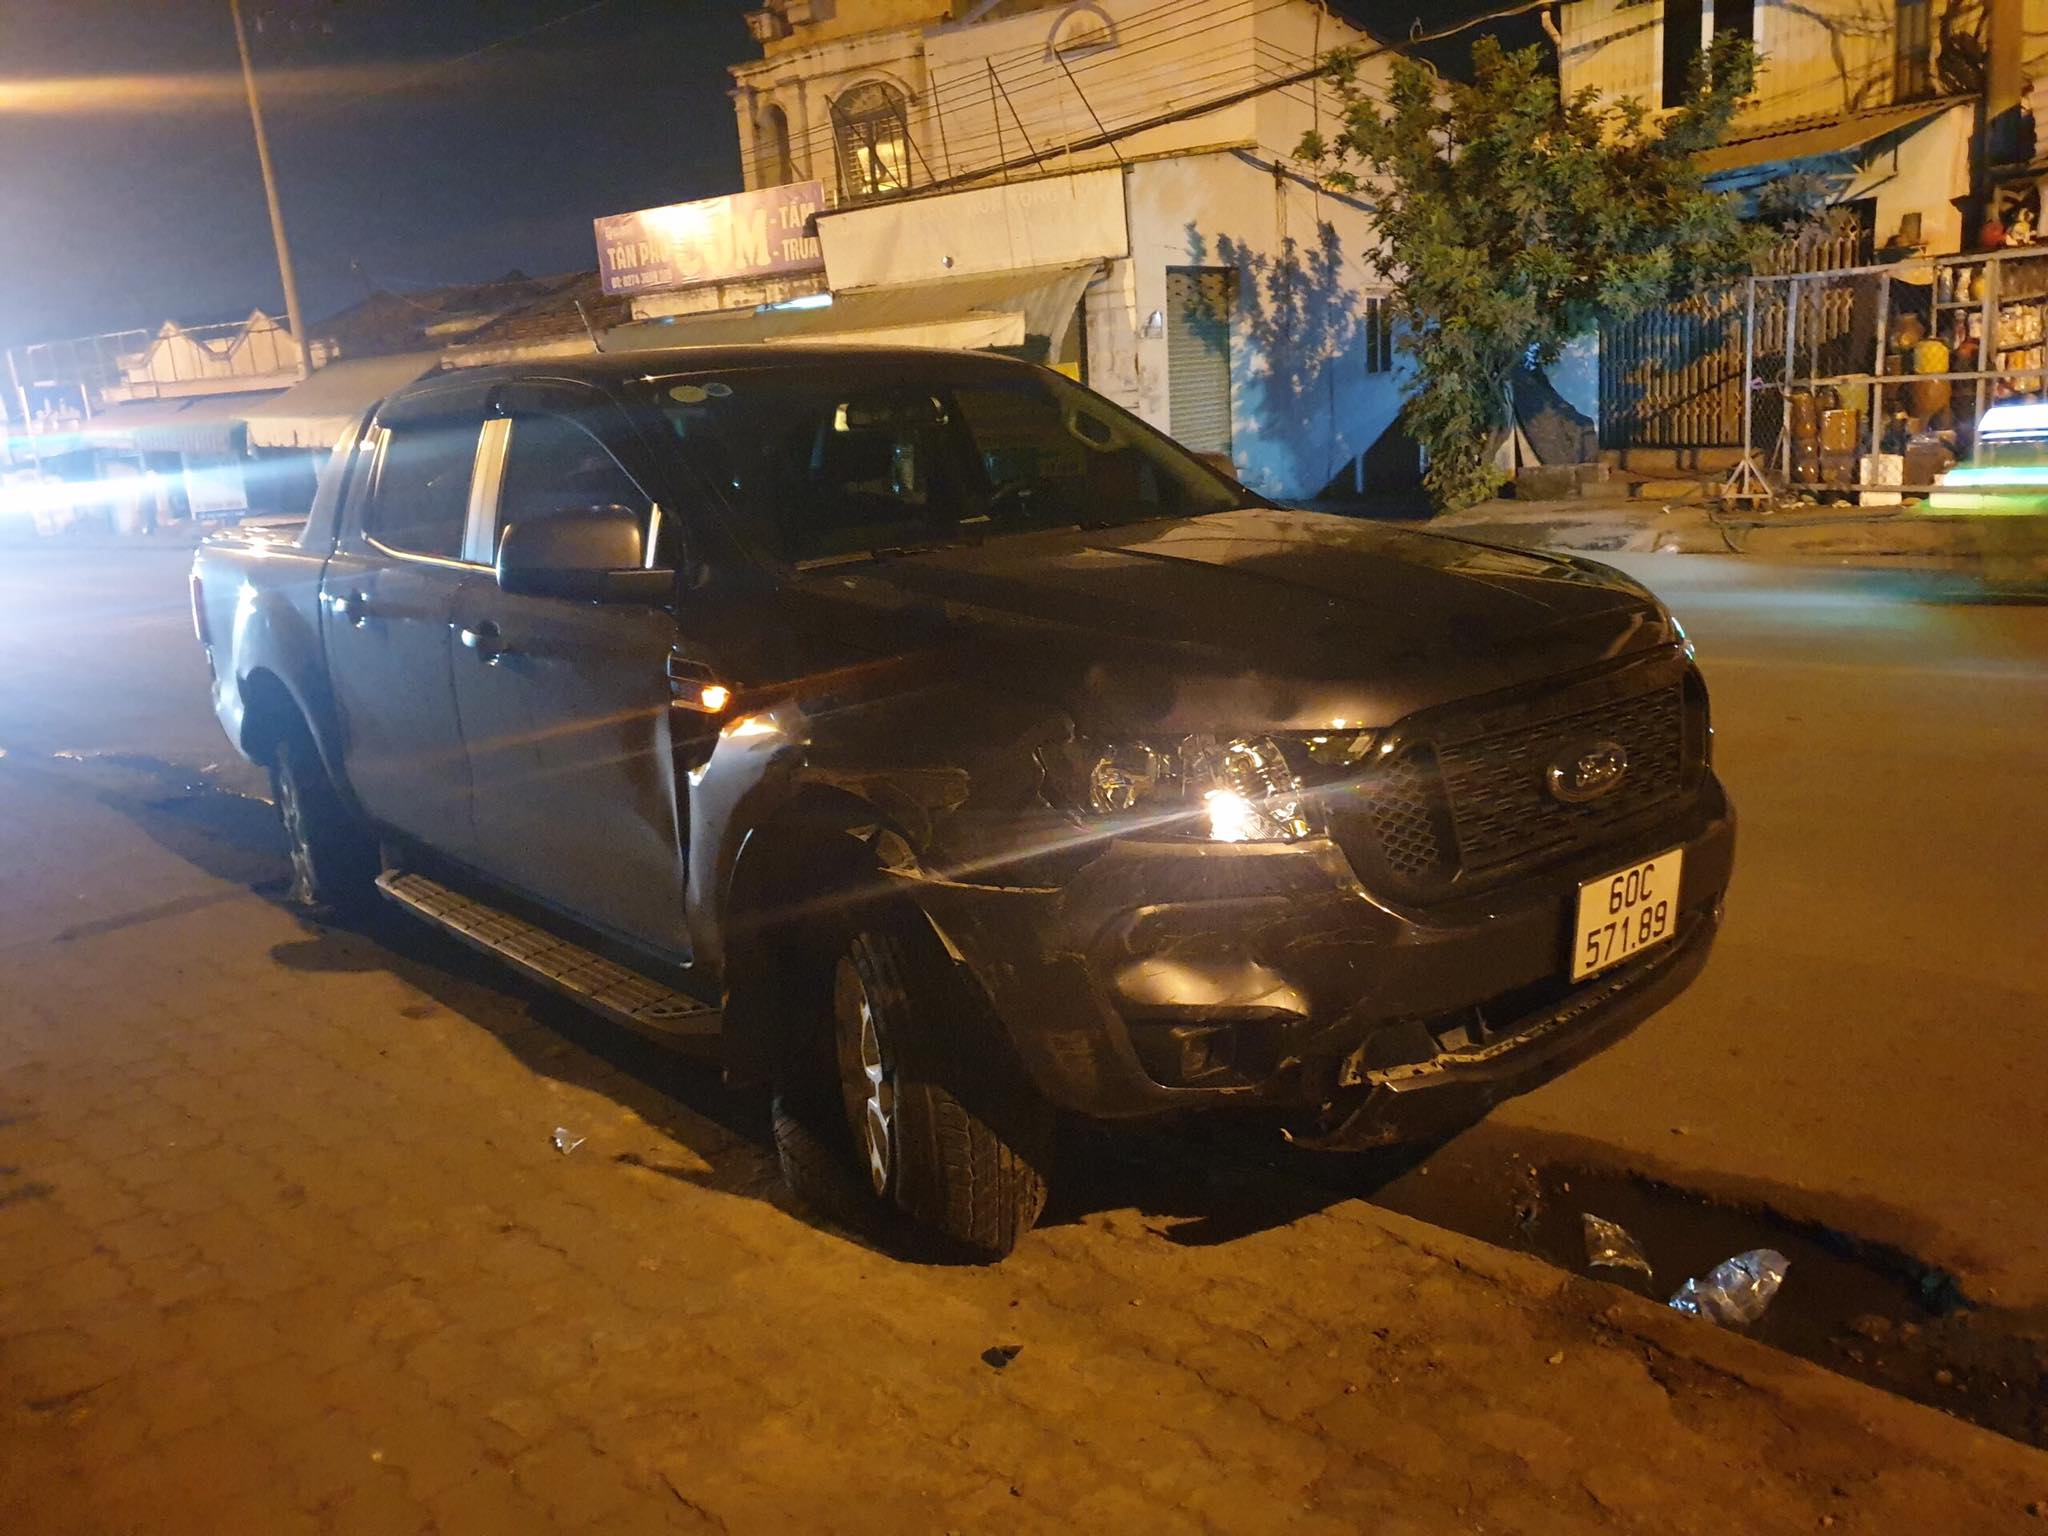 Xe bán tải do người đàn ông nước ngoài cầm lái húc văng 3 xe máy trong đêm, 4 người bị thương - Ảnh 1.